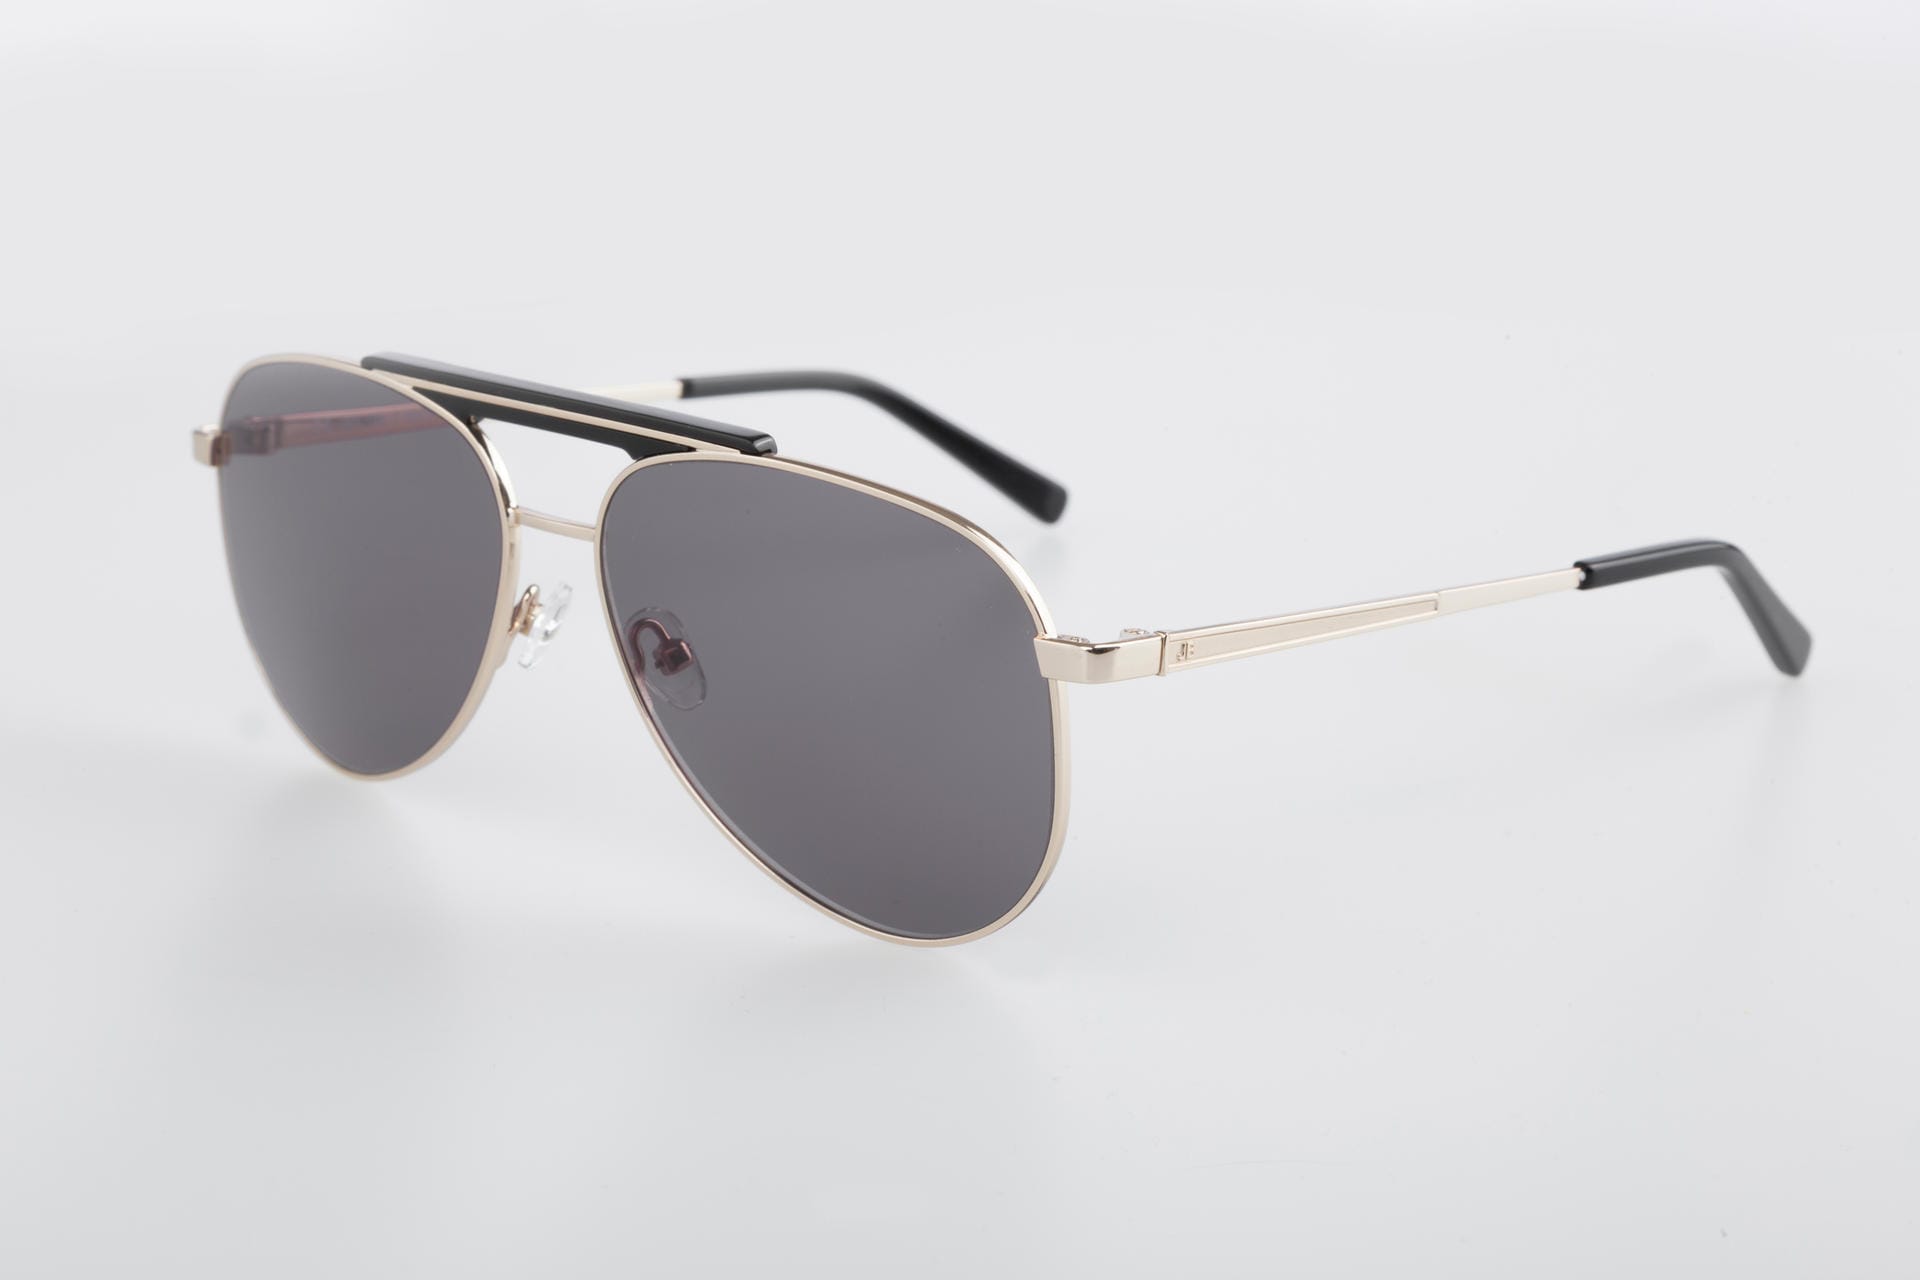 Die Piloten-Sonnenbrille "Manchester" mit goldfarbenem Rahmen kostet ab 139 Euro.